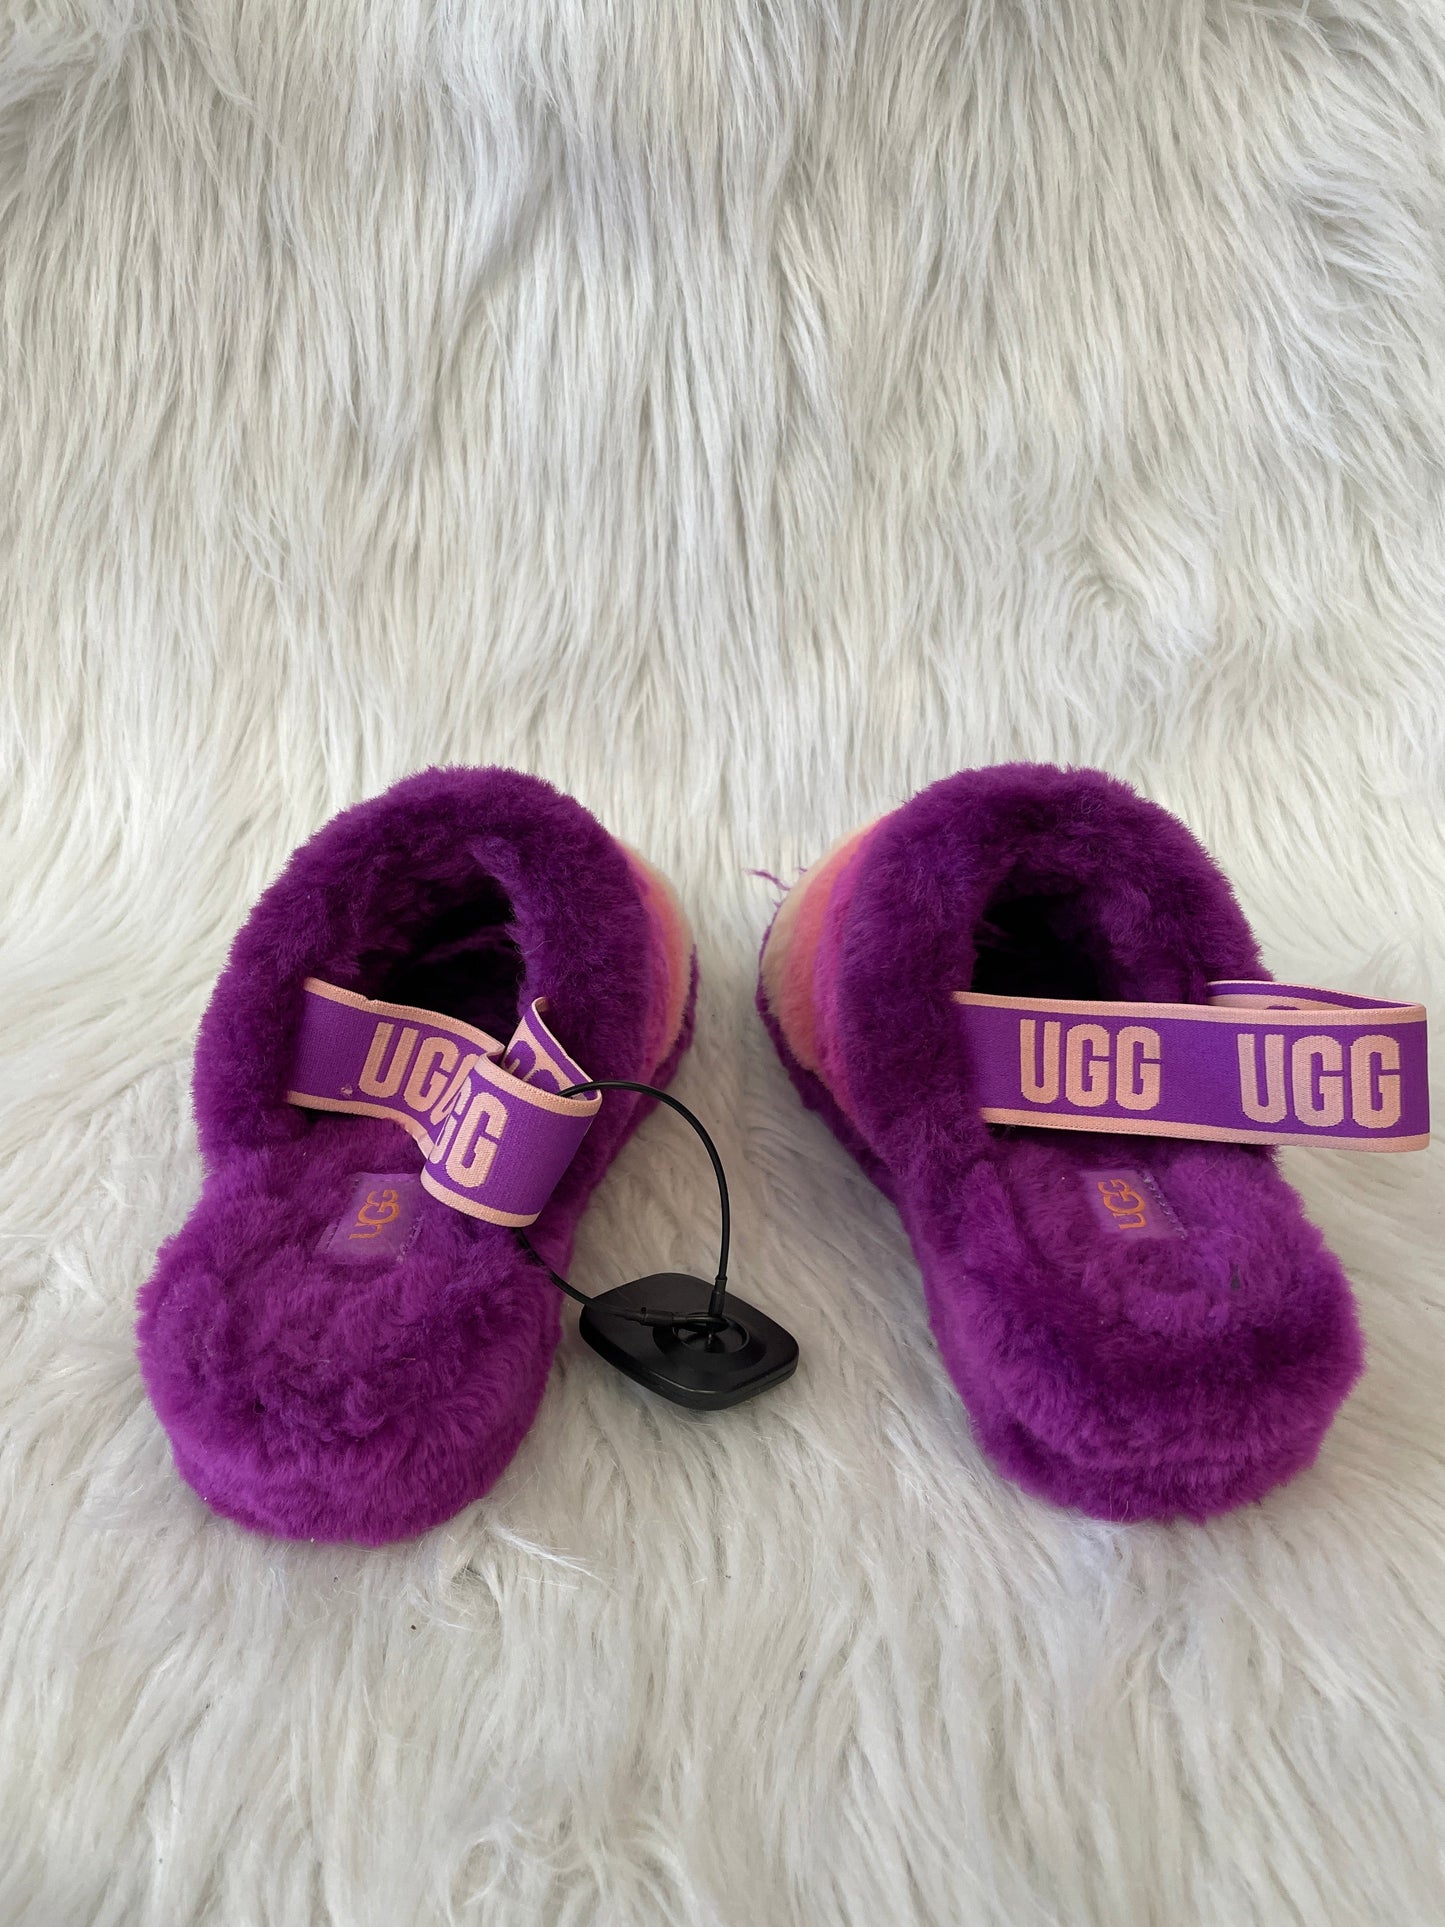 Pink & Purple Sandals Designer Ugg, Size 7